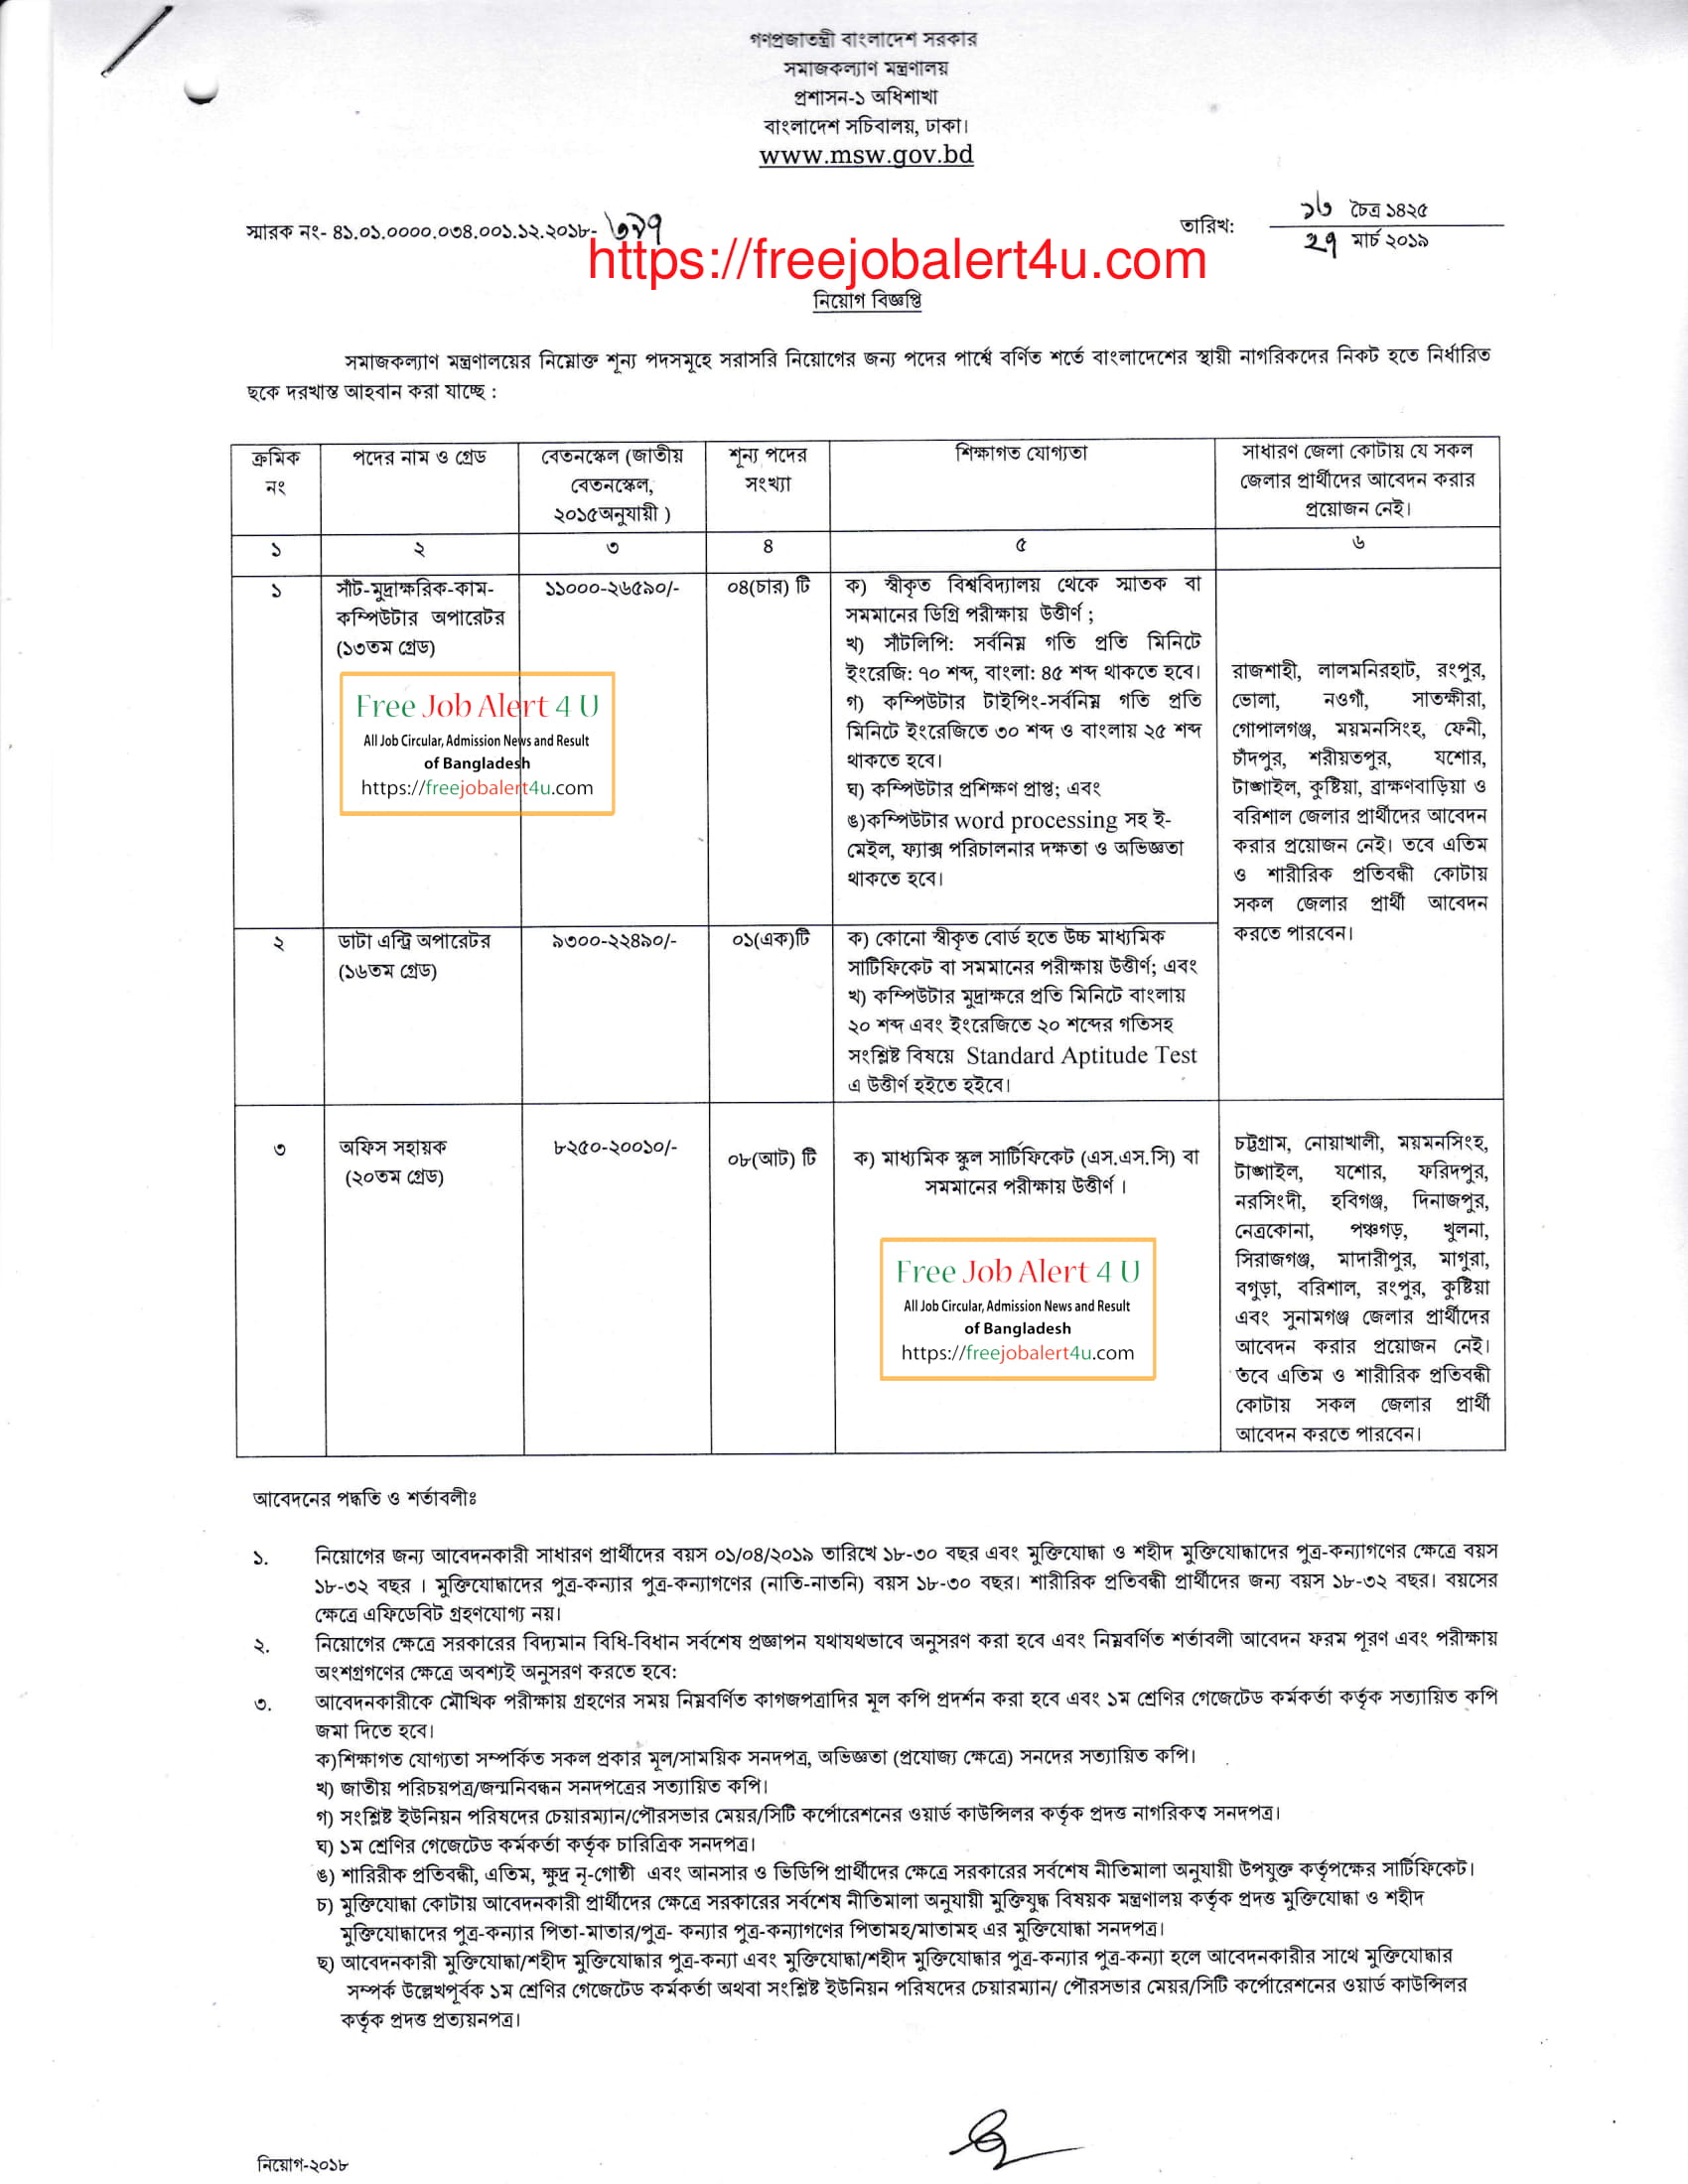 সমাজকল্যাণ মন্ত্রণালয় নিয়োগ বিজ্ঞপ্তি ২০১৯ (Ministry of Social Welfare (MSW) Job Circular 2019)